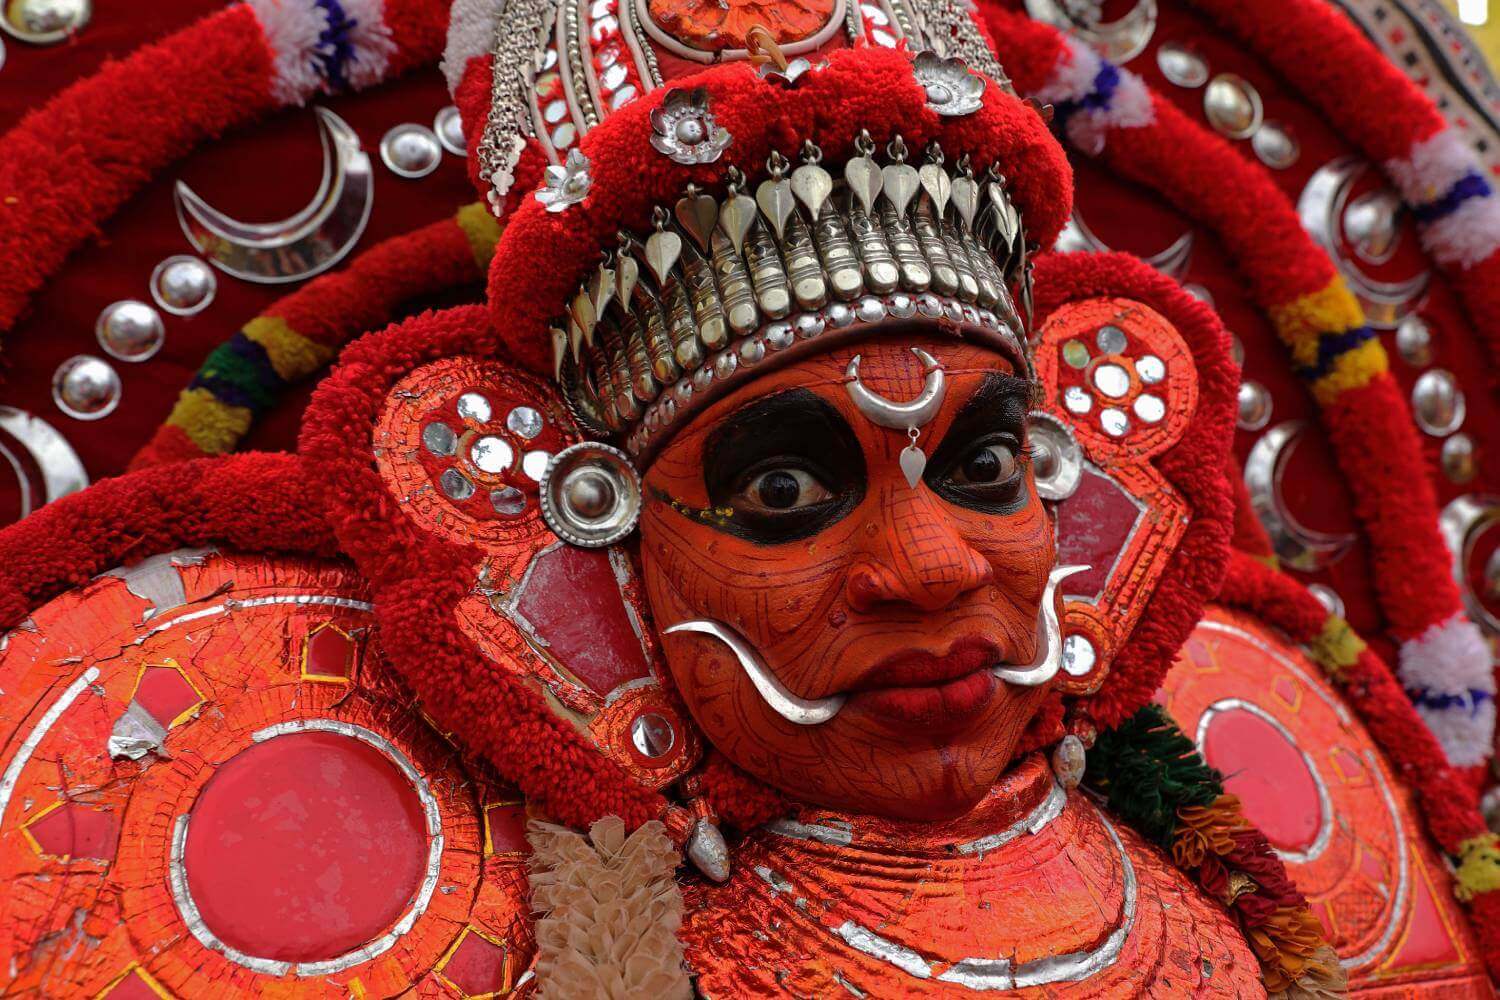 Kerala Onam Festival